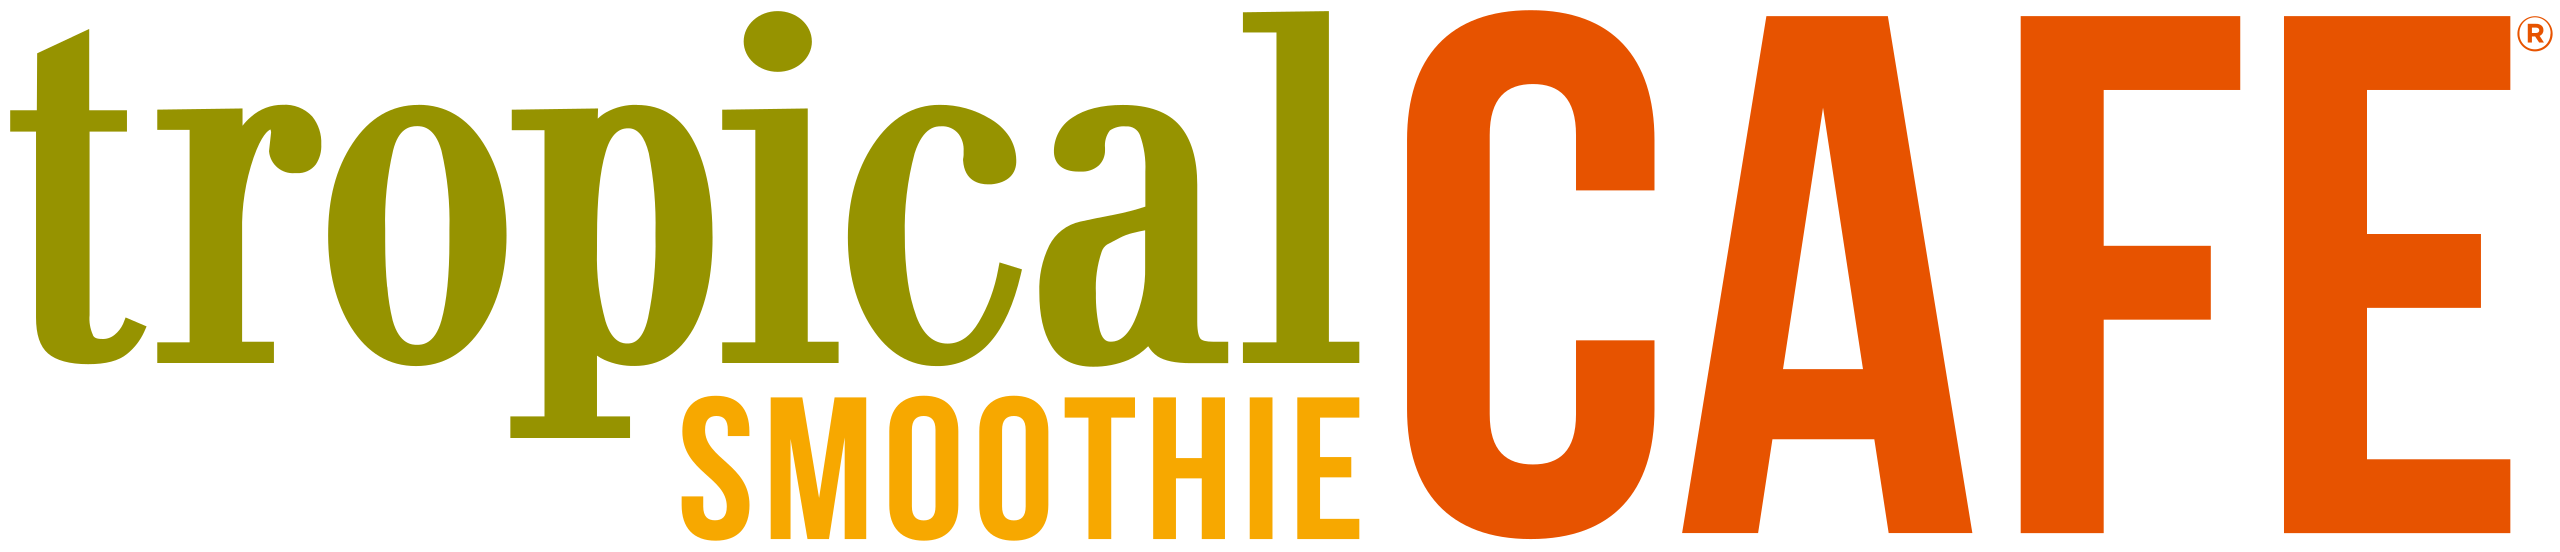 Tropical_Smoothie_Cafe_logo.svg